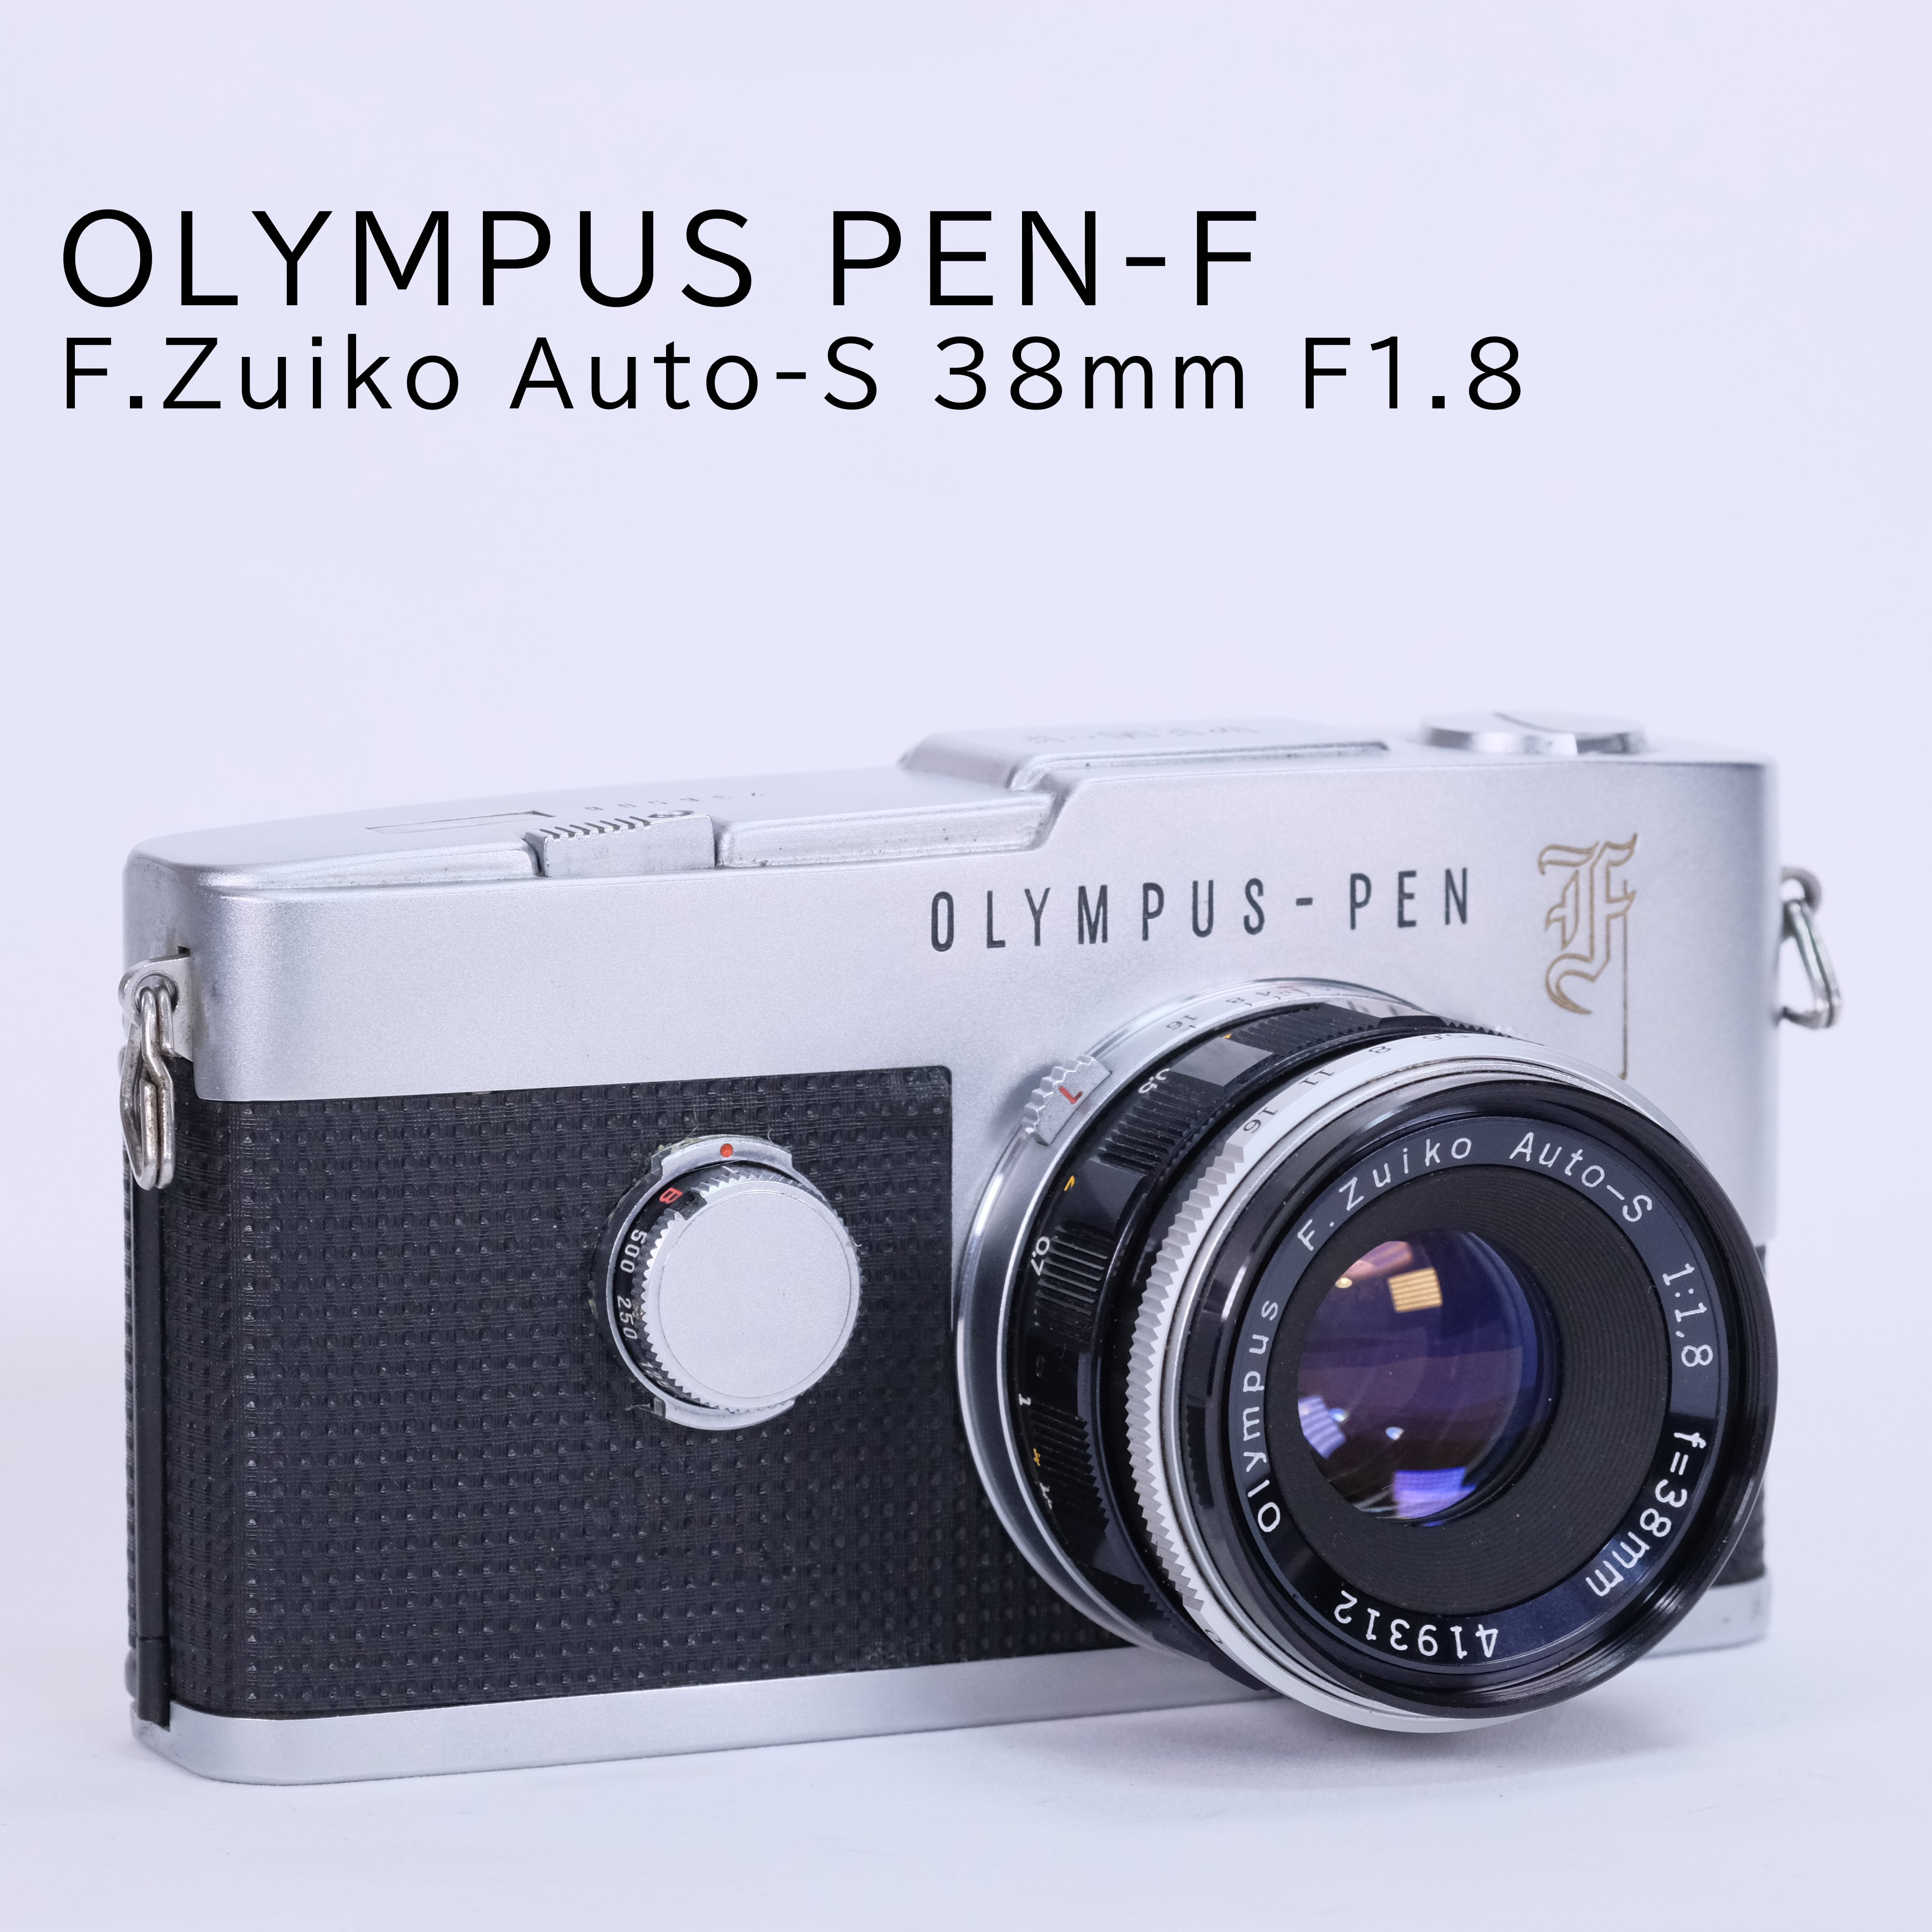 Olympus PEN F / F.Zuiko 38mm F1.8